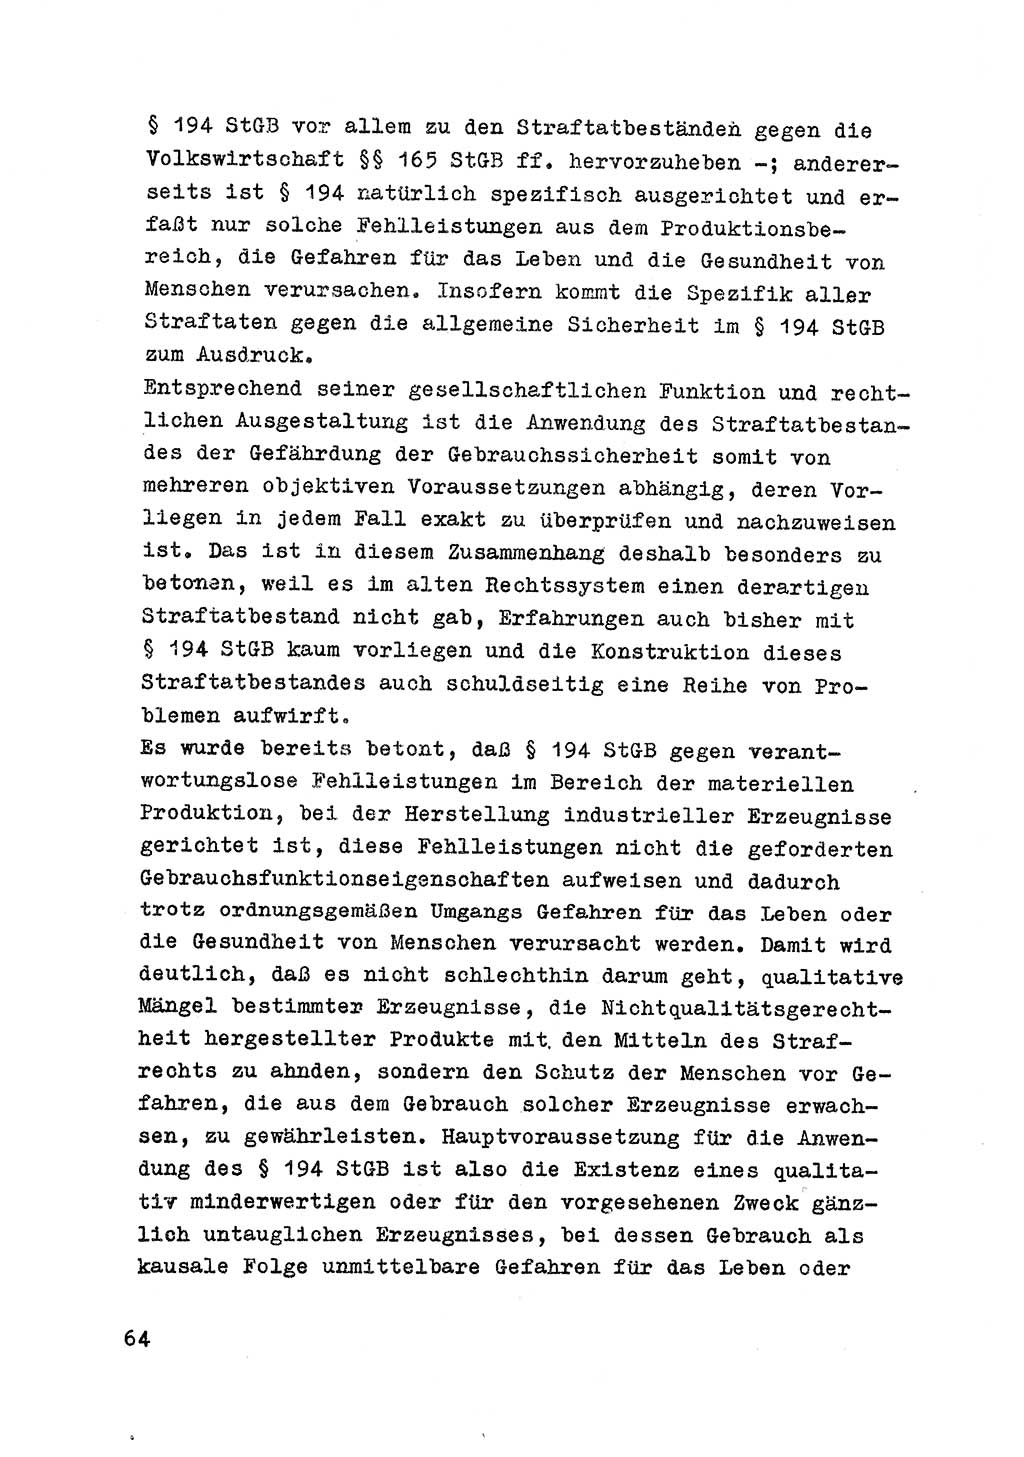 Strafrecht der DDR (Deutsche Demokratische Republik), Besonderer Teil, Lehrmaterial, Heft 7 1970, Seite 64 (Strafr. DDR BT Lehrmat. H. 7 1970, S. 64)